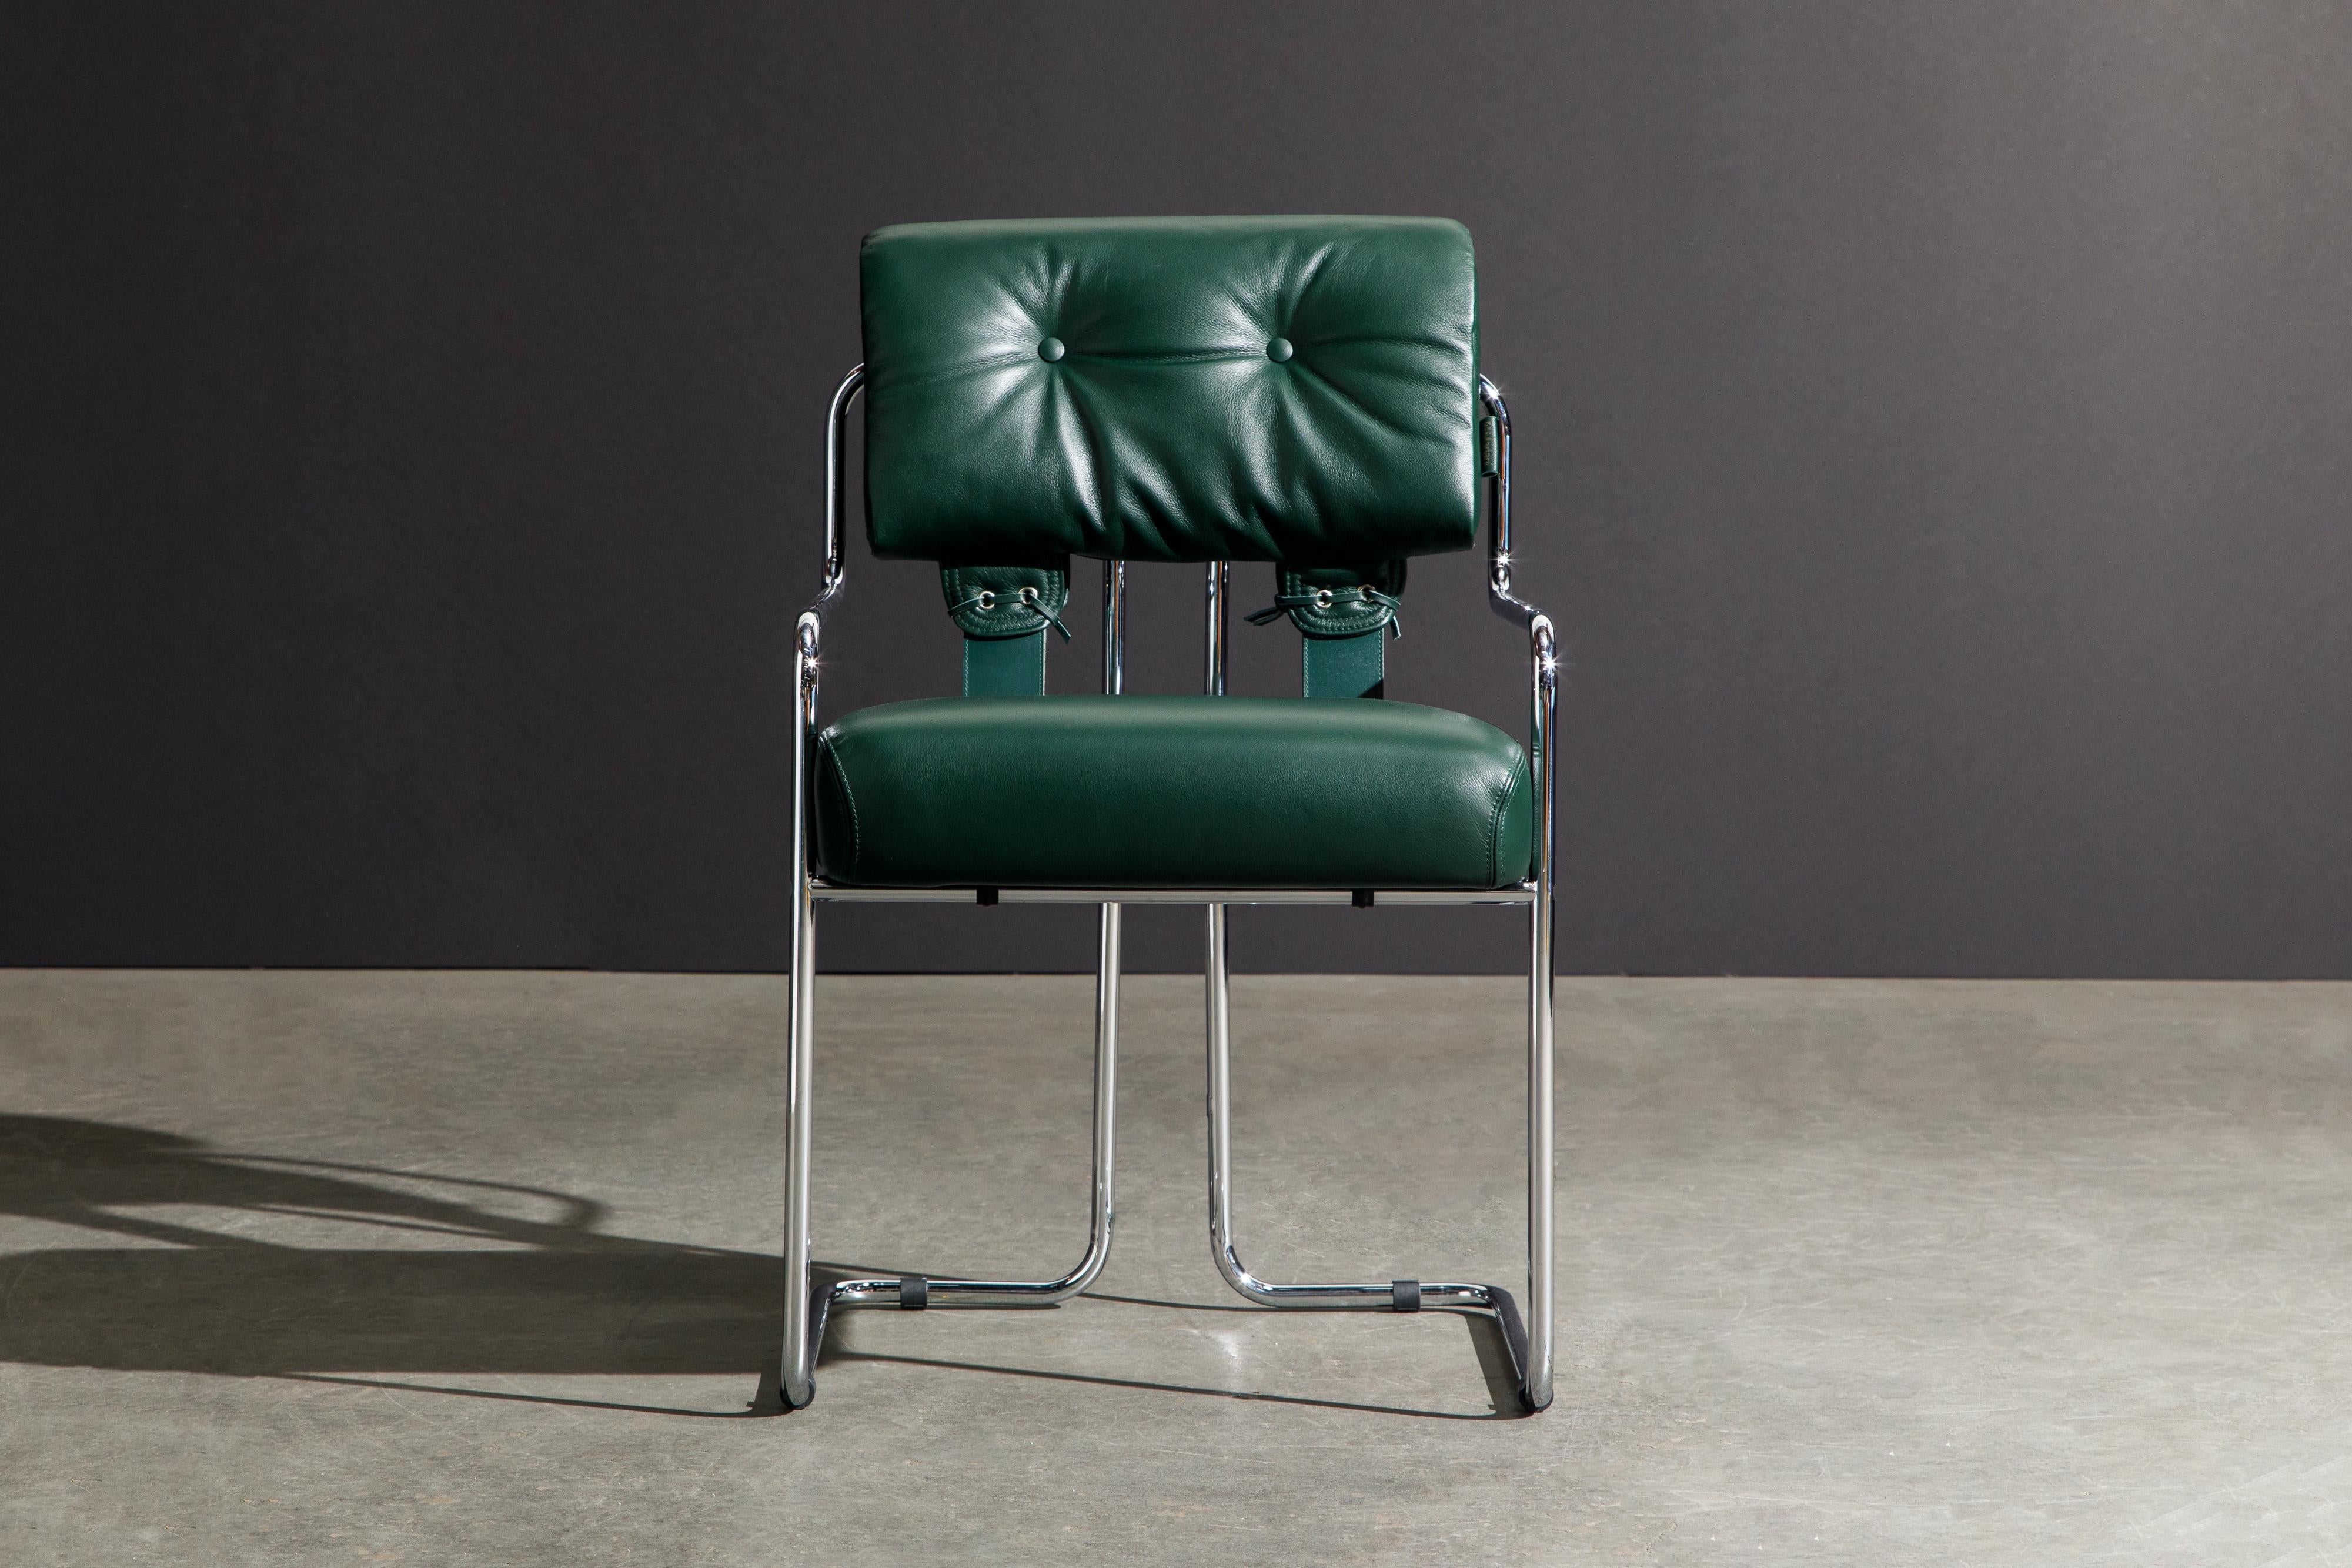 Satz von vier Tucroma-Sesseln in schönem smaragdgrünem Leder mit polierten Chromrahmen. Die Sitze und Rückenlehnen sind mit geschmeidigem, grünem Leder bezogen und an zierlichen, polierten Stahlrohrrahmen befestigt. Die Rückenlehnen werden durch